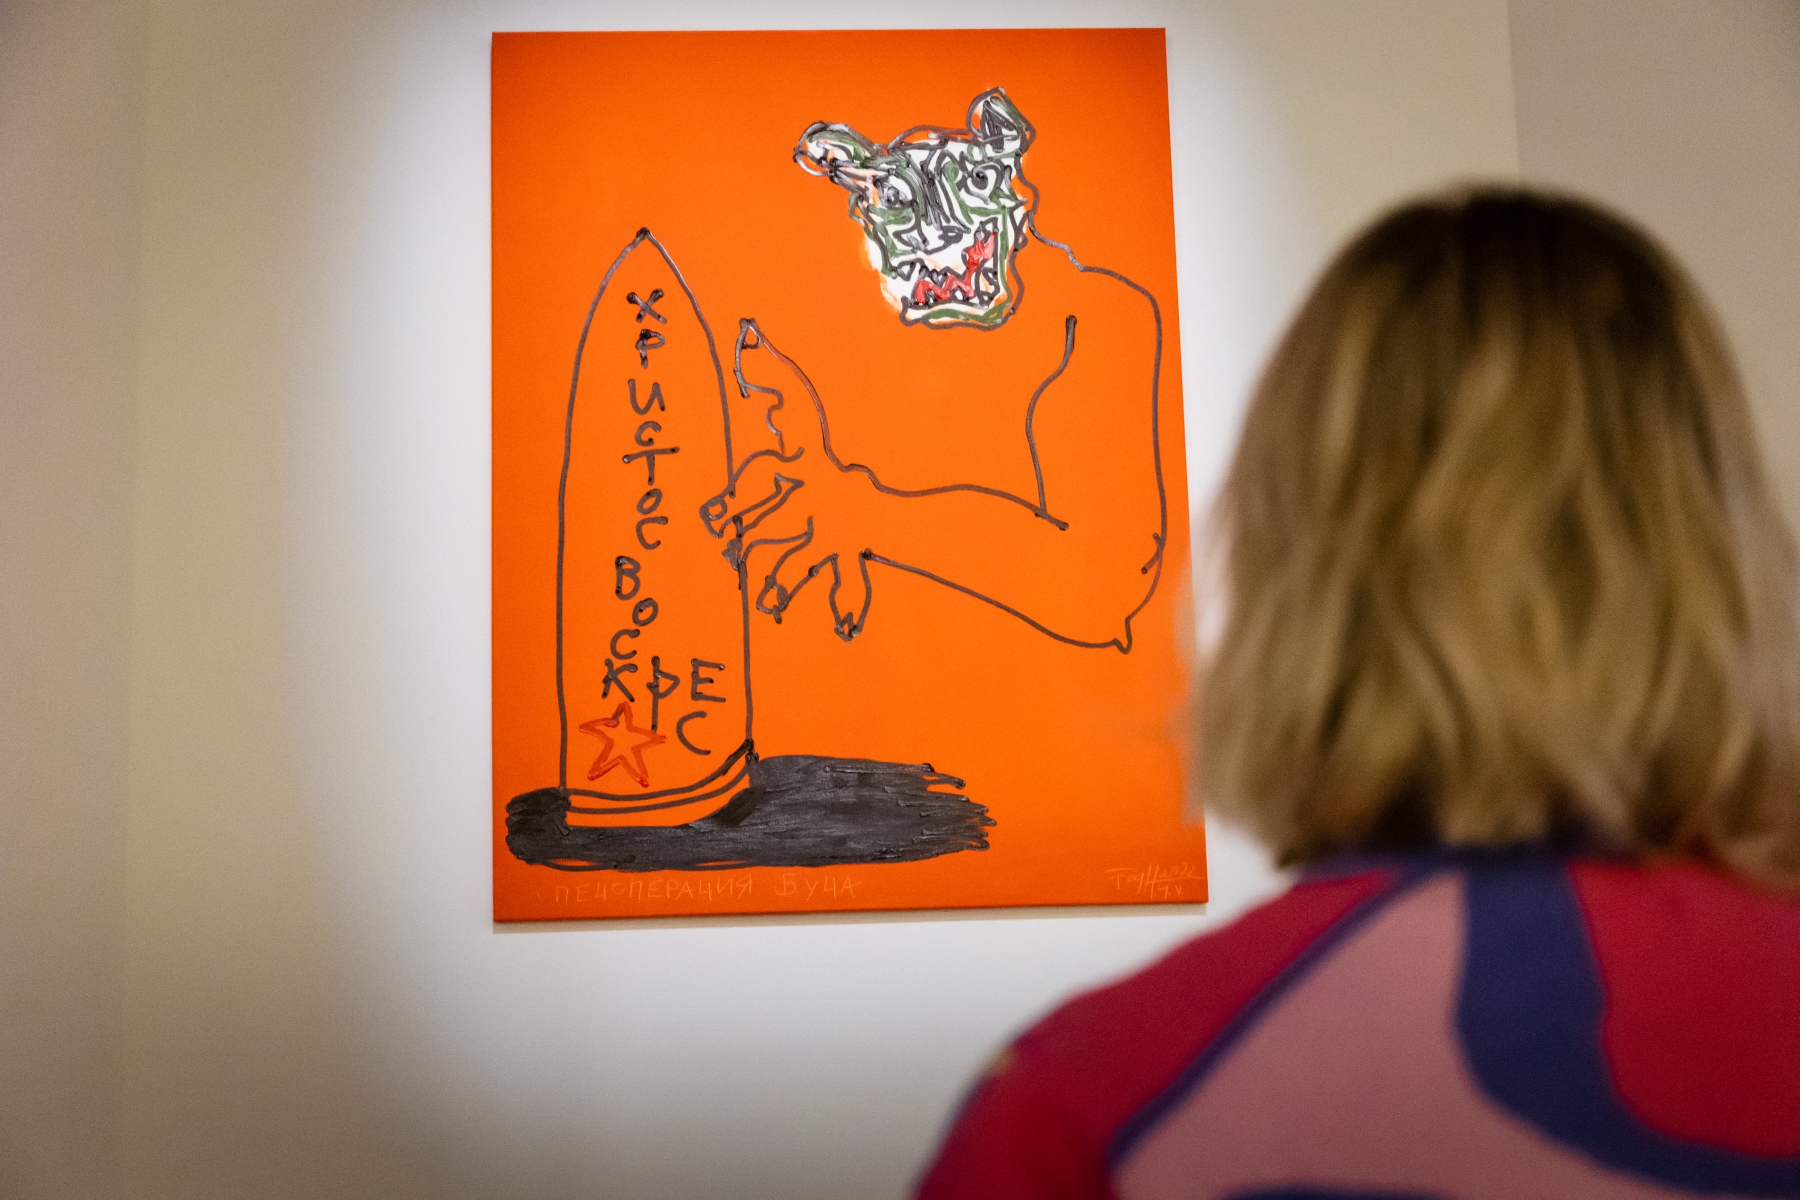 Kobieta stoi przed jednym z obrazów z serii "Bucza" Andrzeja Fogtta prezentowanym w POLIN.